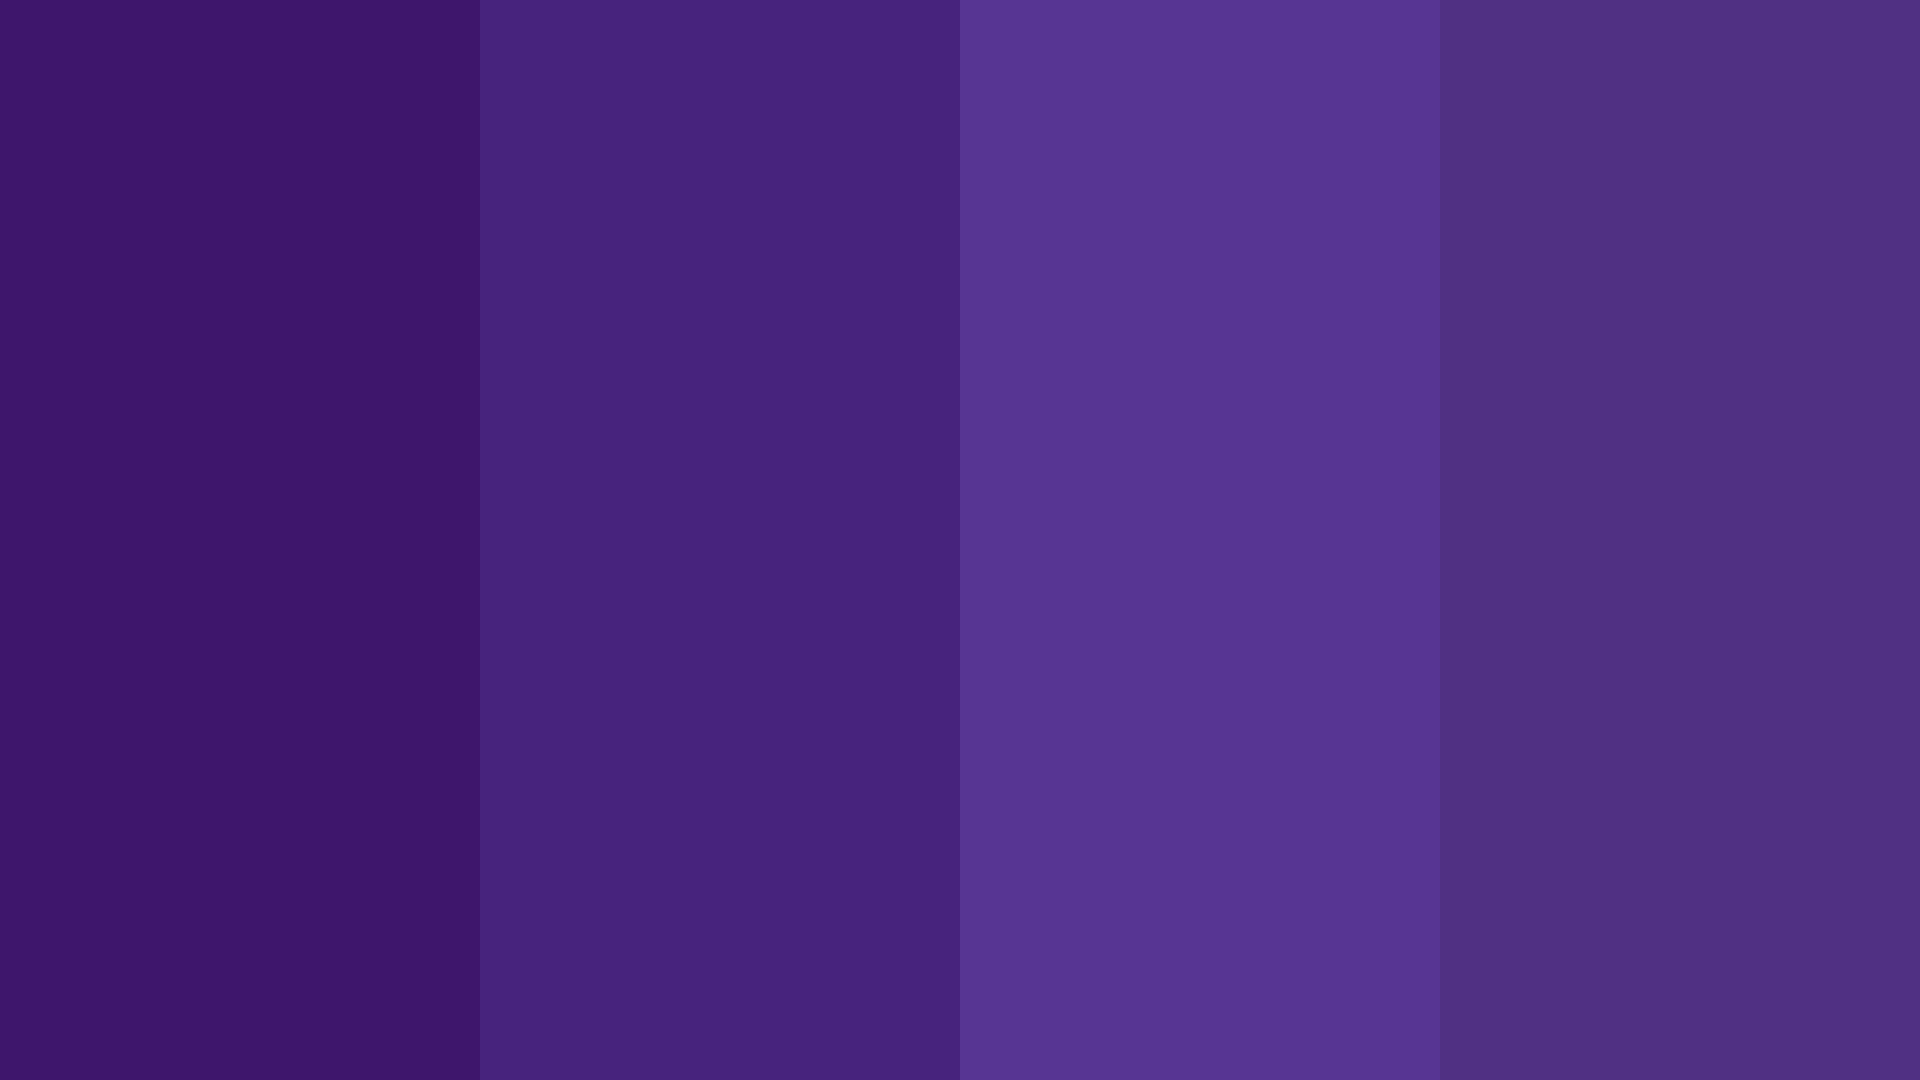 Paletade Cores Em Violeta Fosco. Papel de Parede